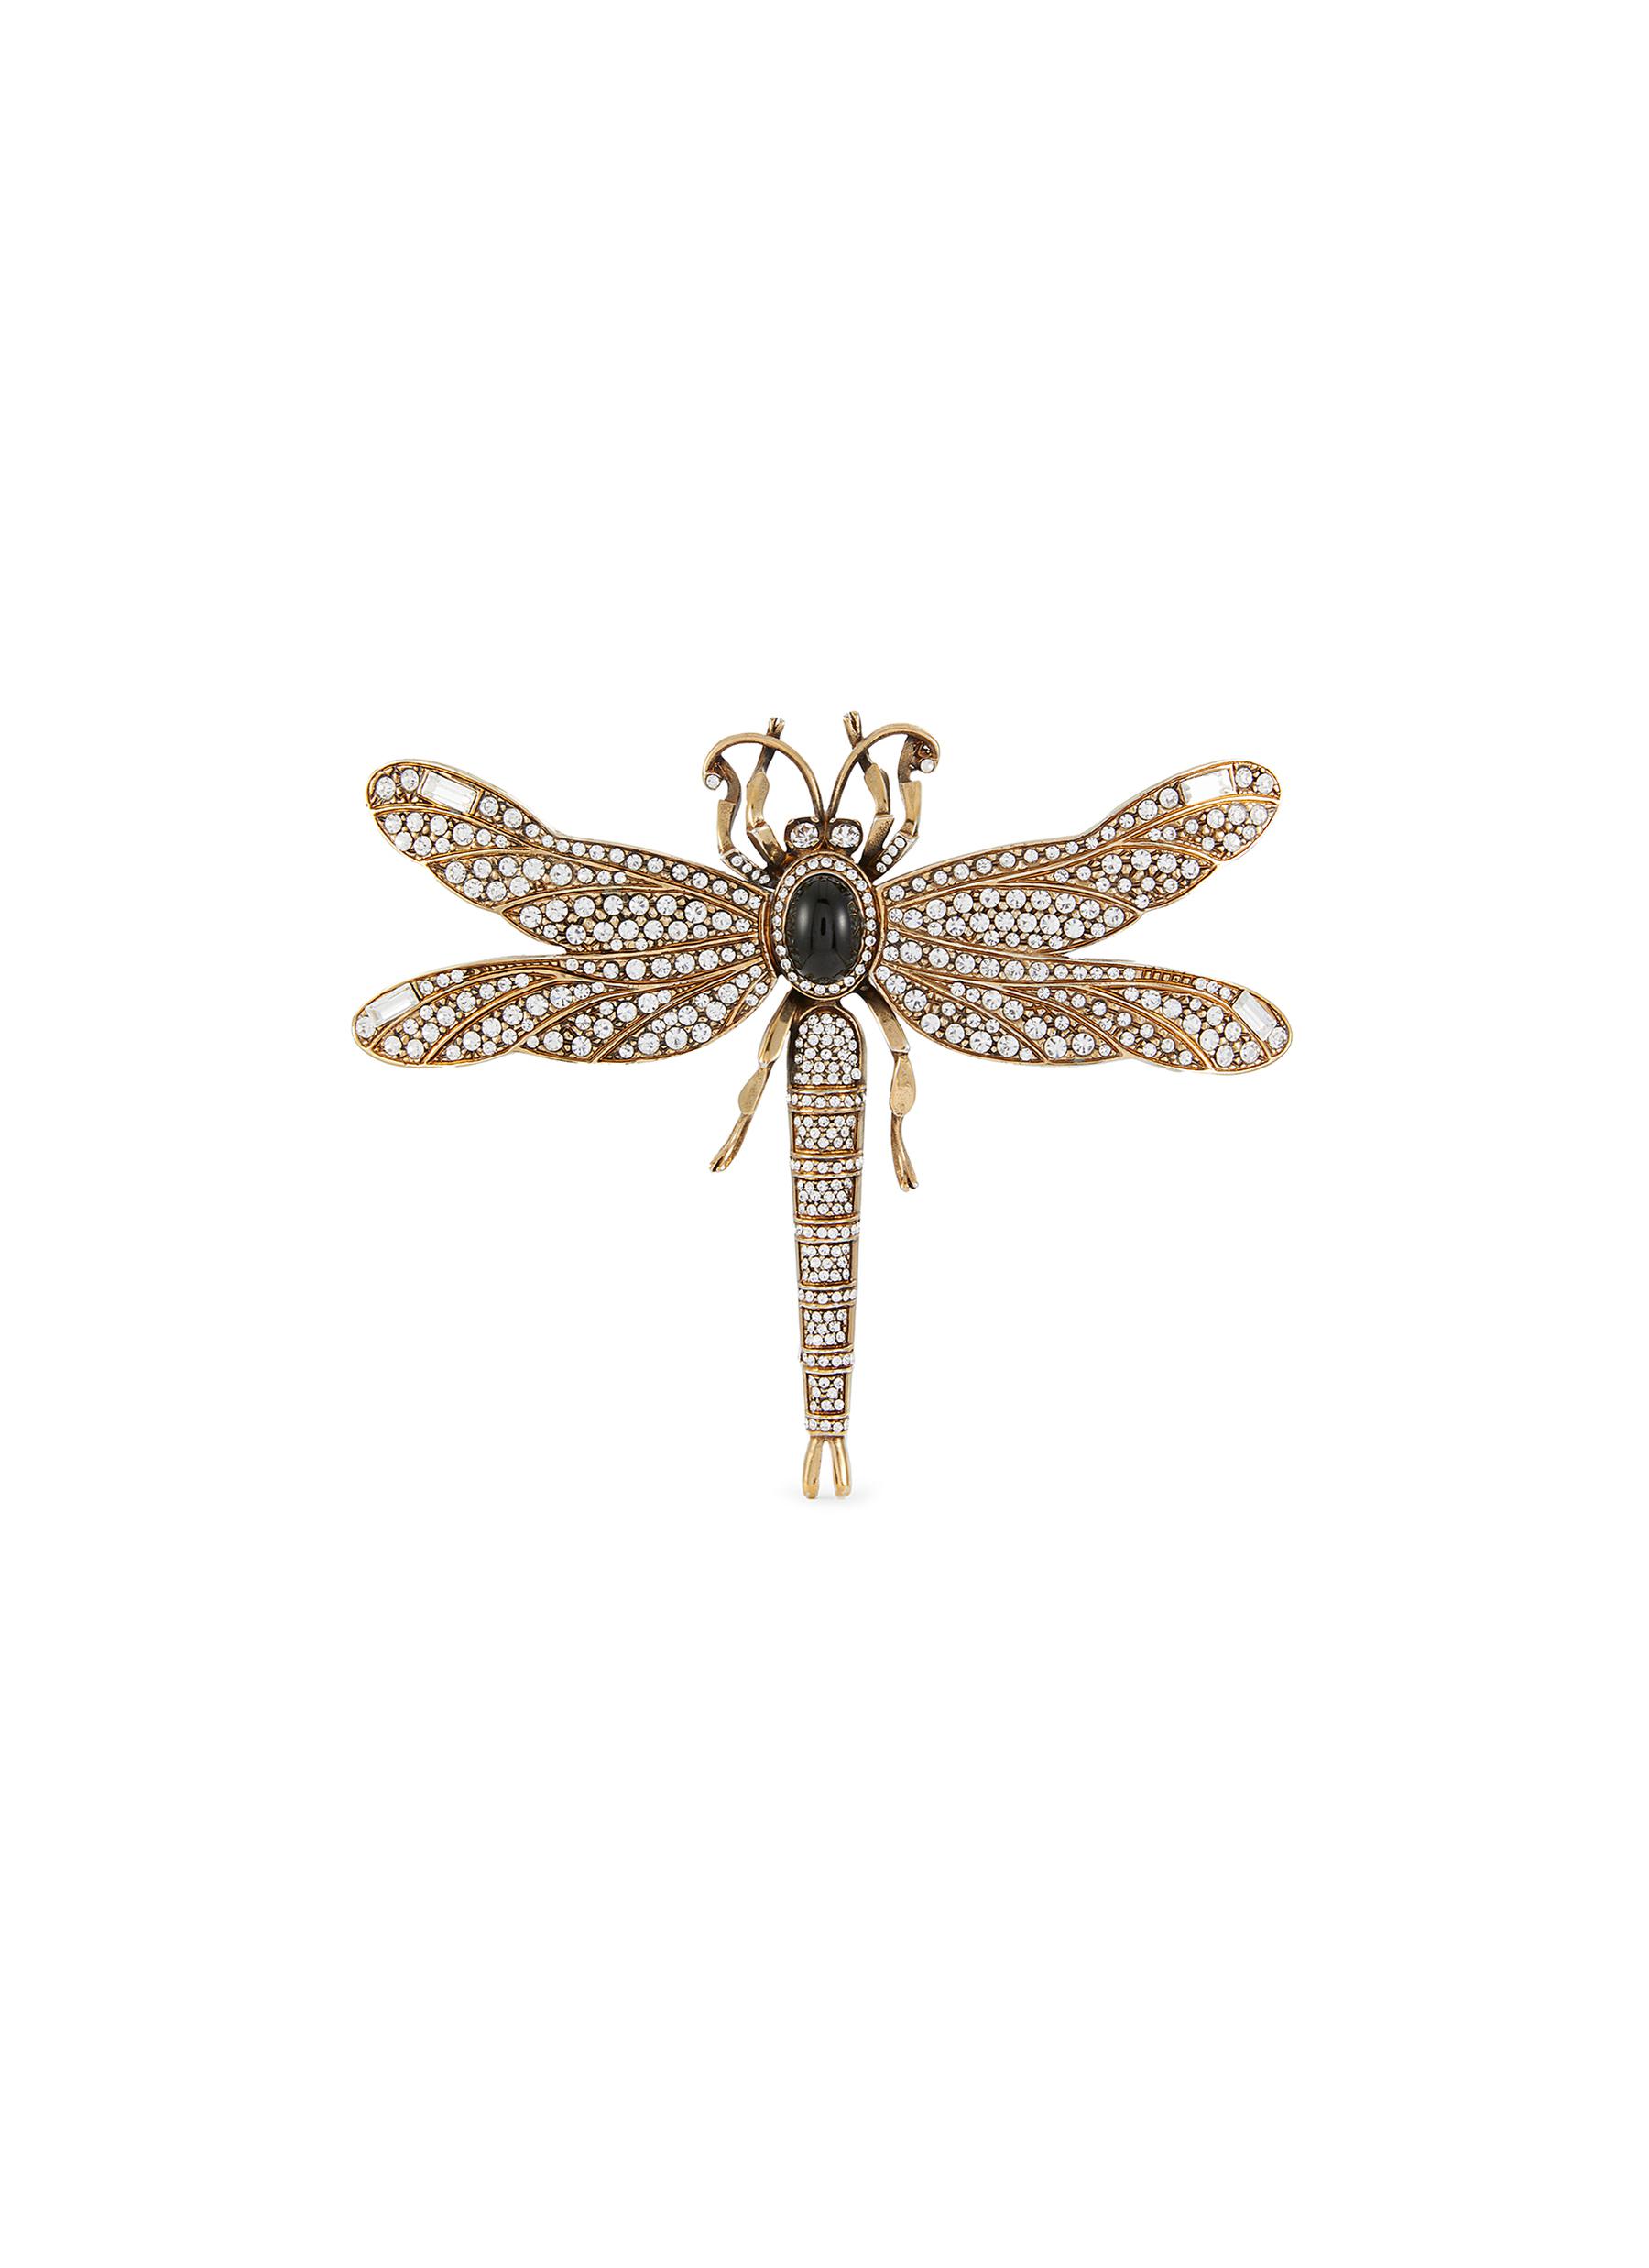 Brass Dragonfly Brooch